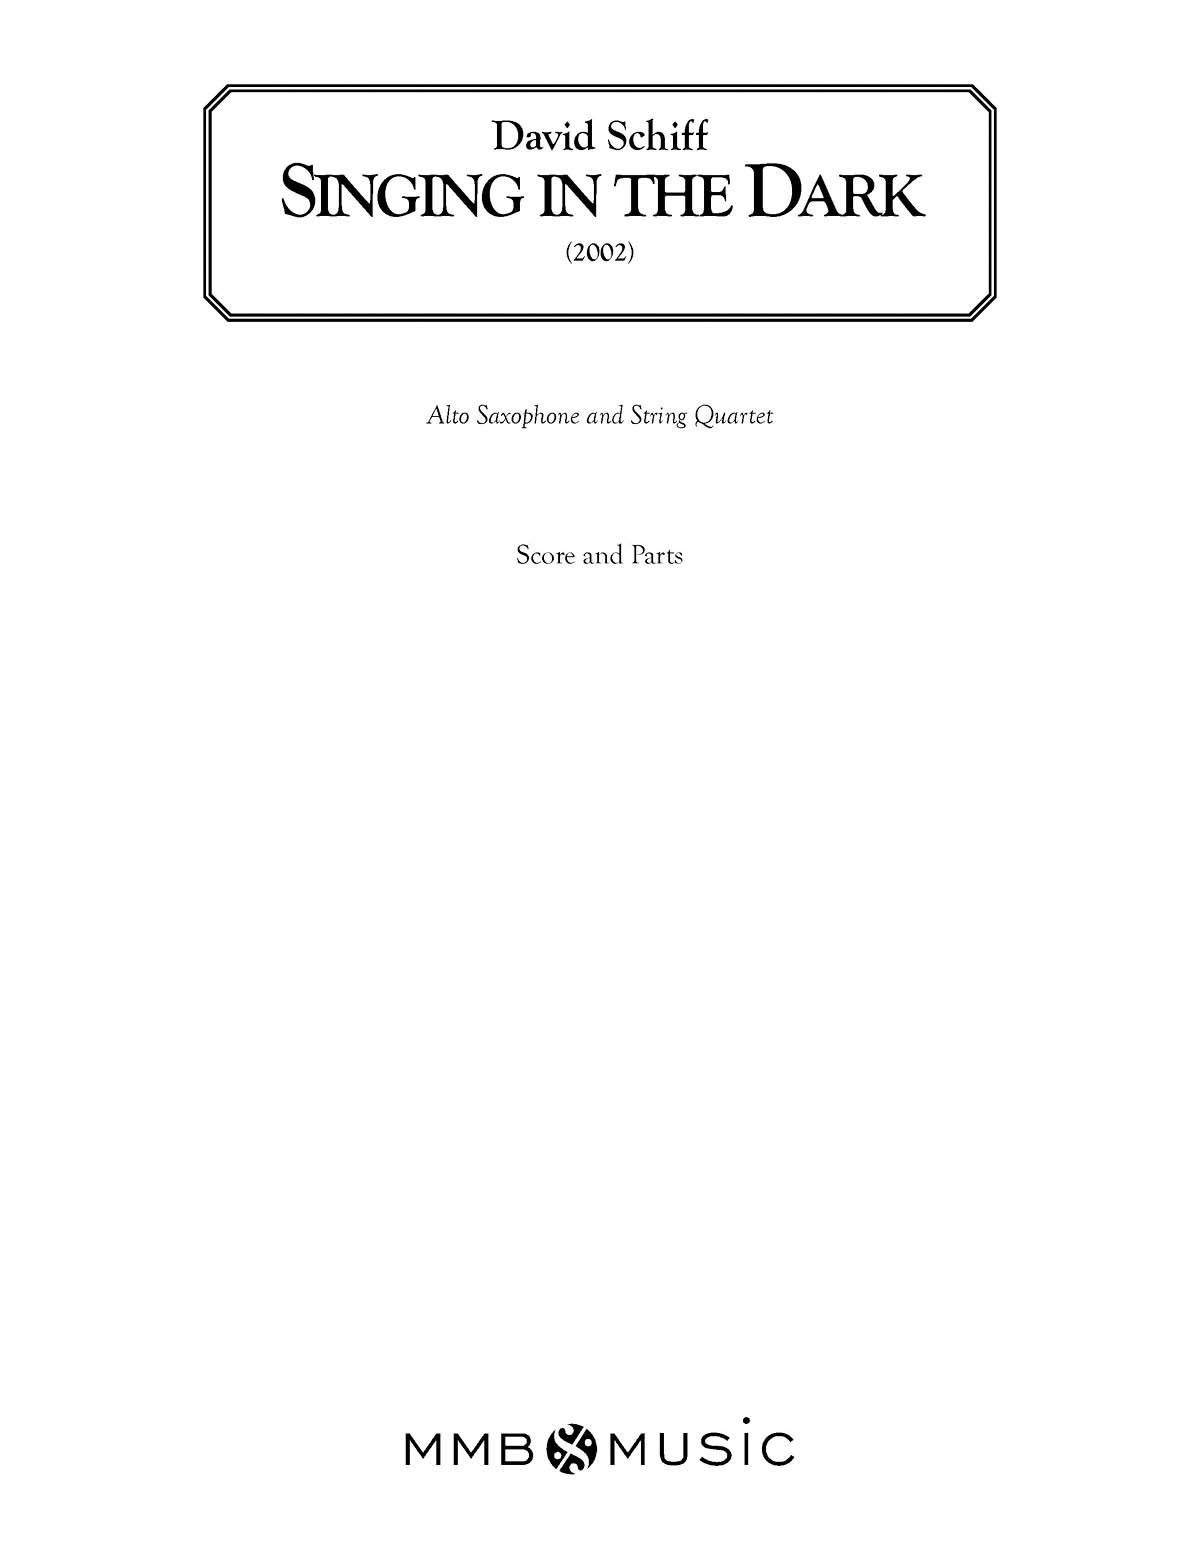 Singing in the Dark